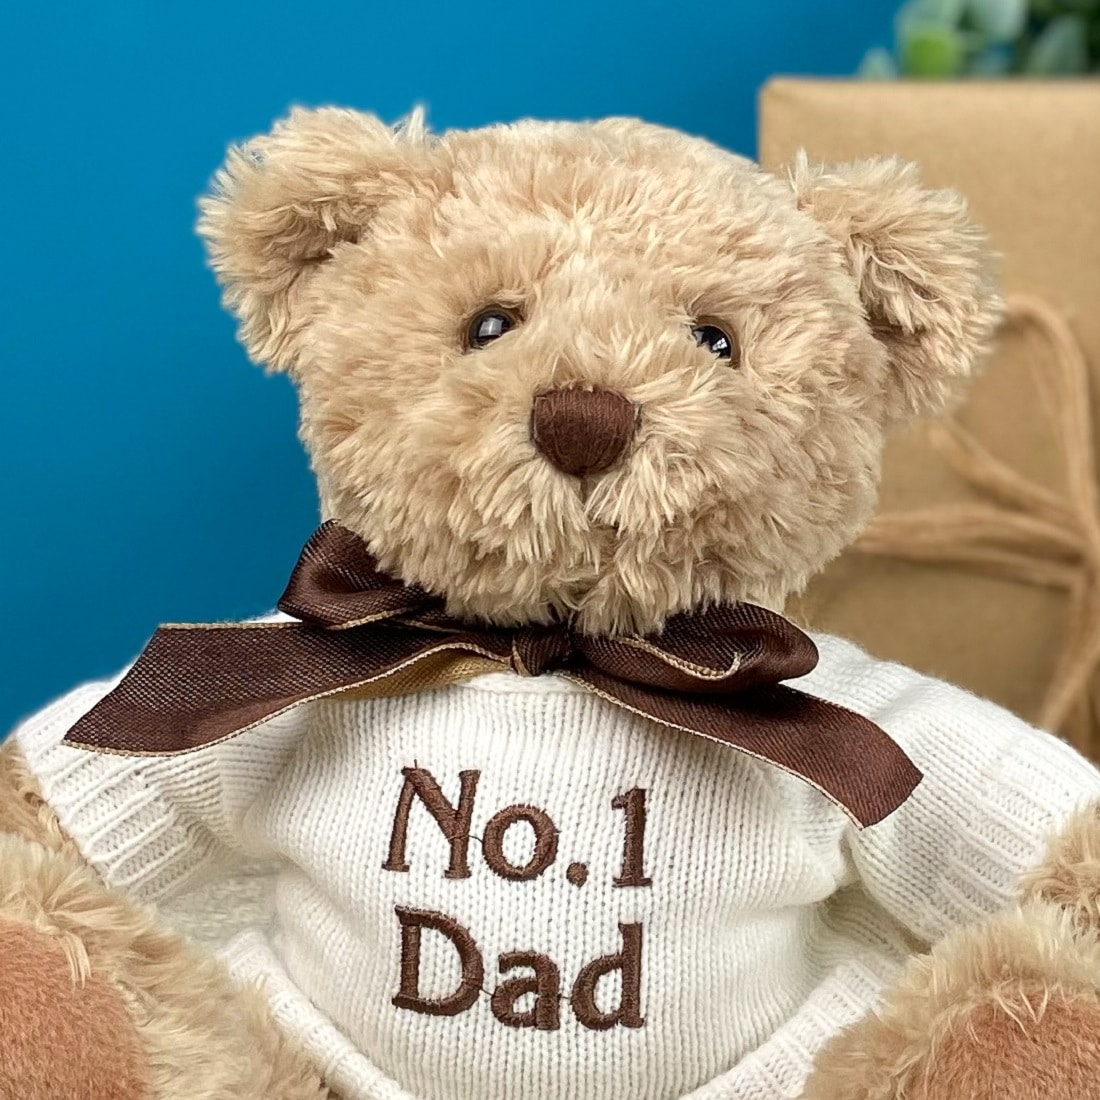 Father's Day Keel sherwood medium teddy bear soft toy